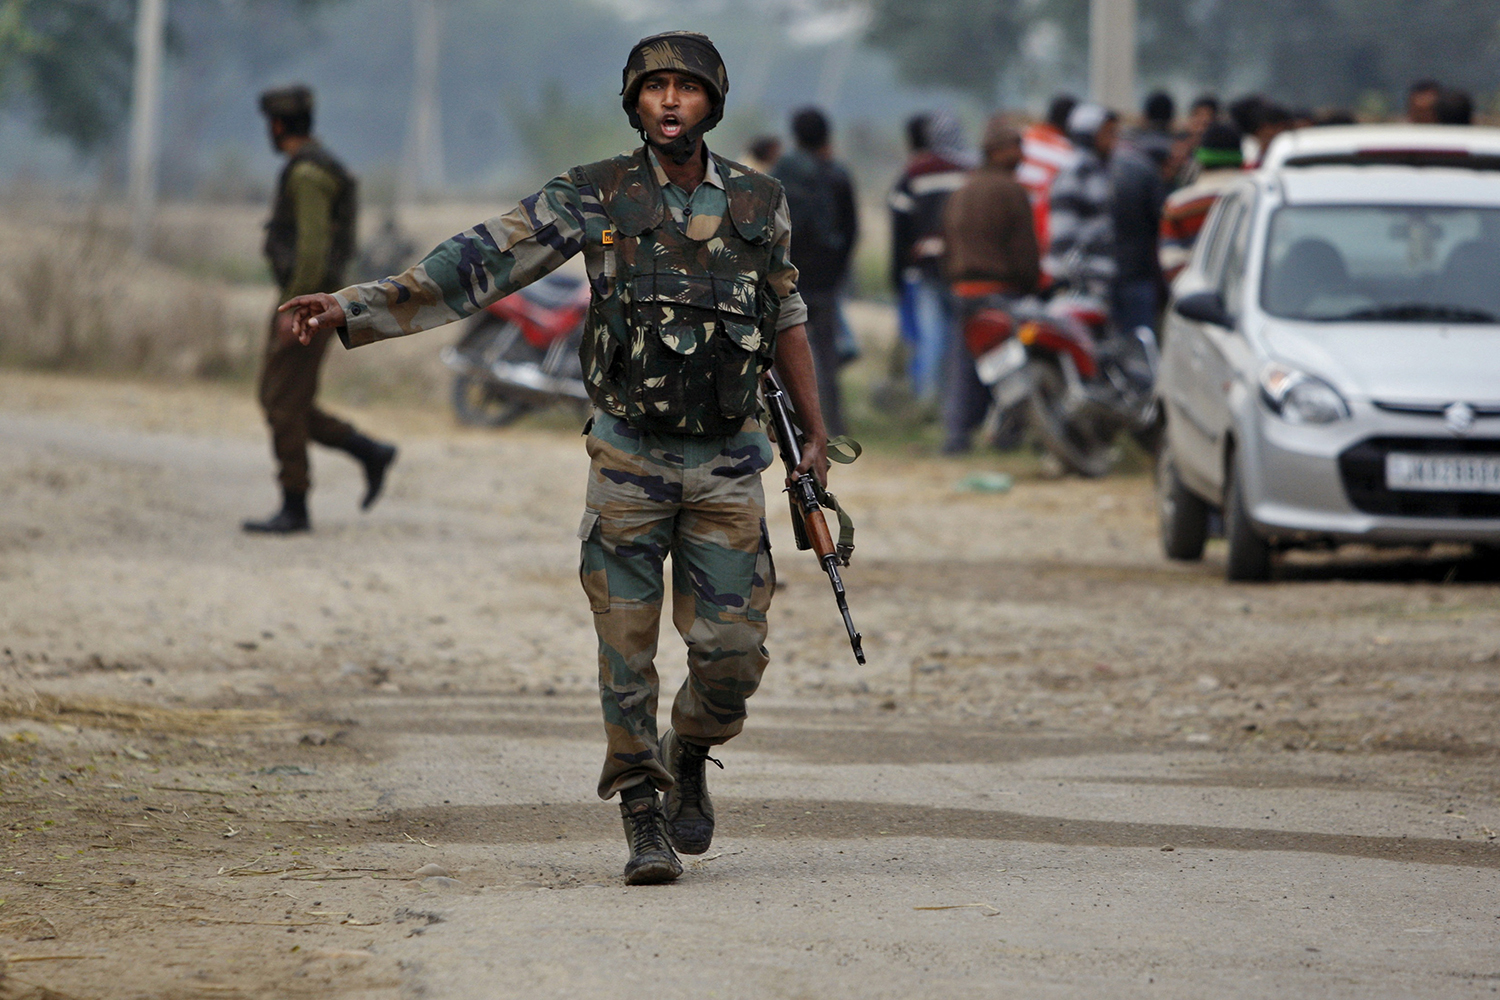 Fallecen siete personas en un choque armado en la India